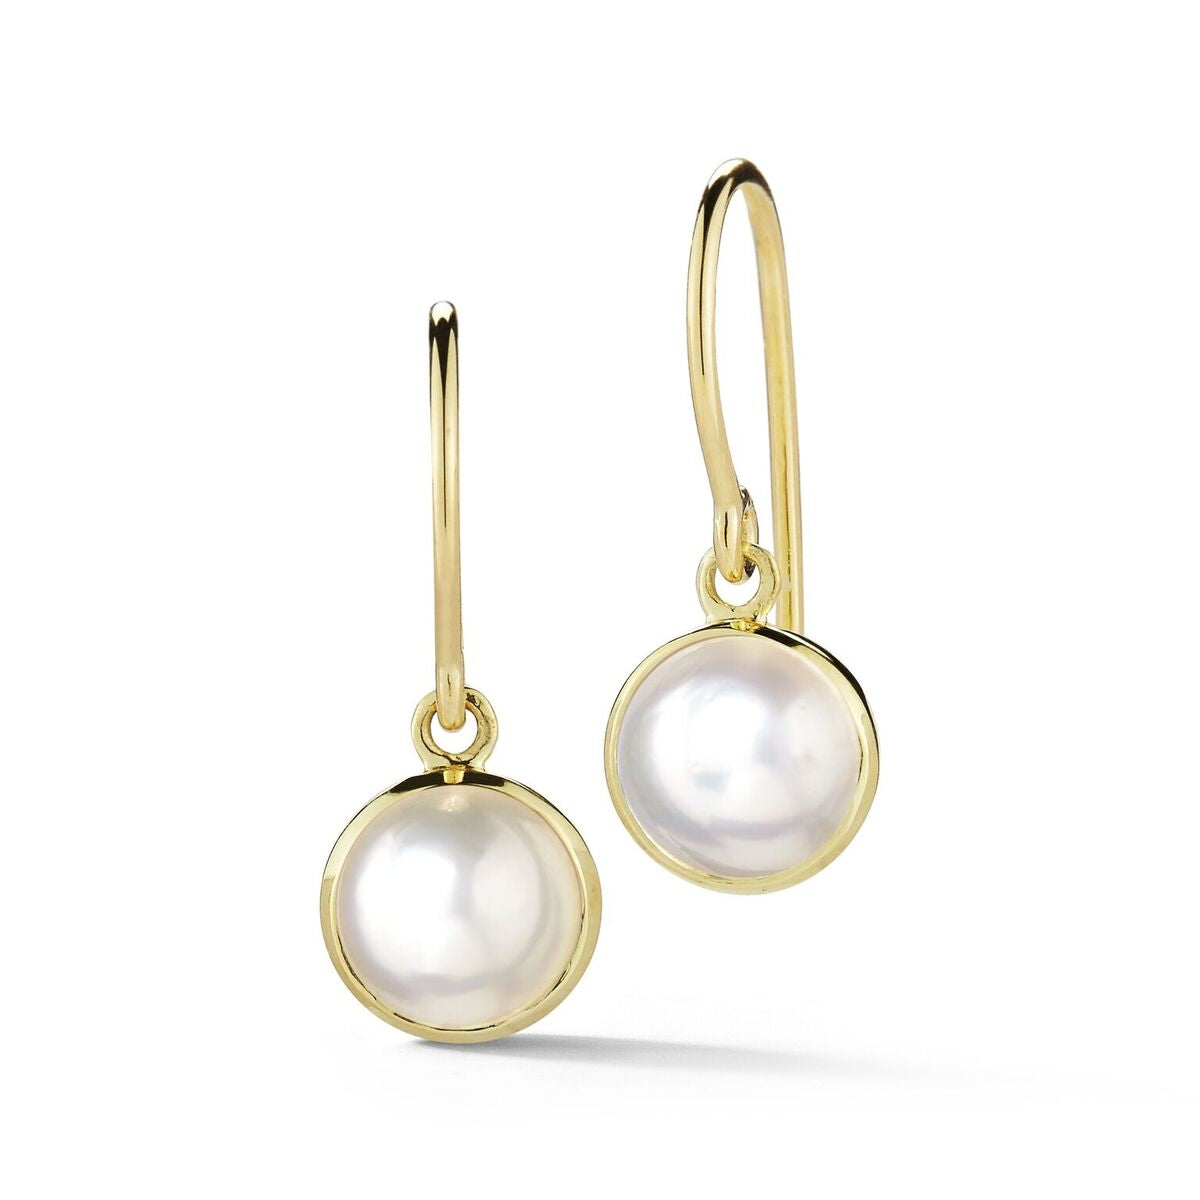 Sweet pearl drop earrings in yellow gold.